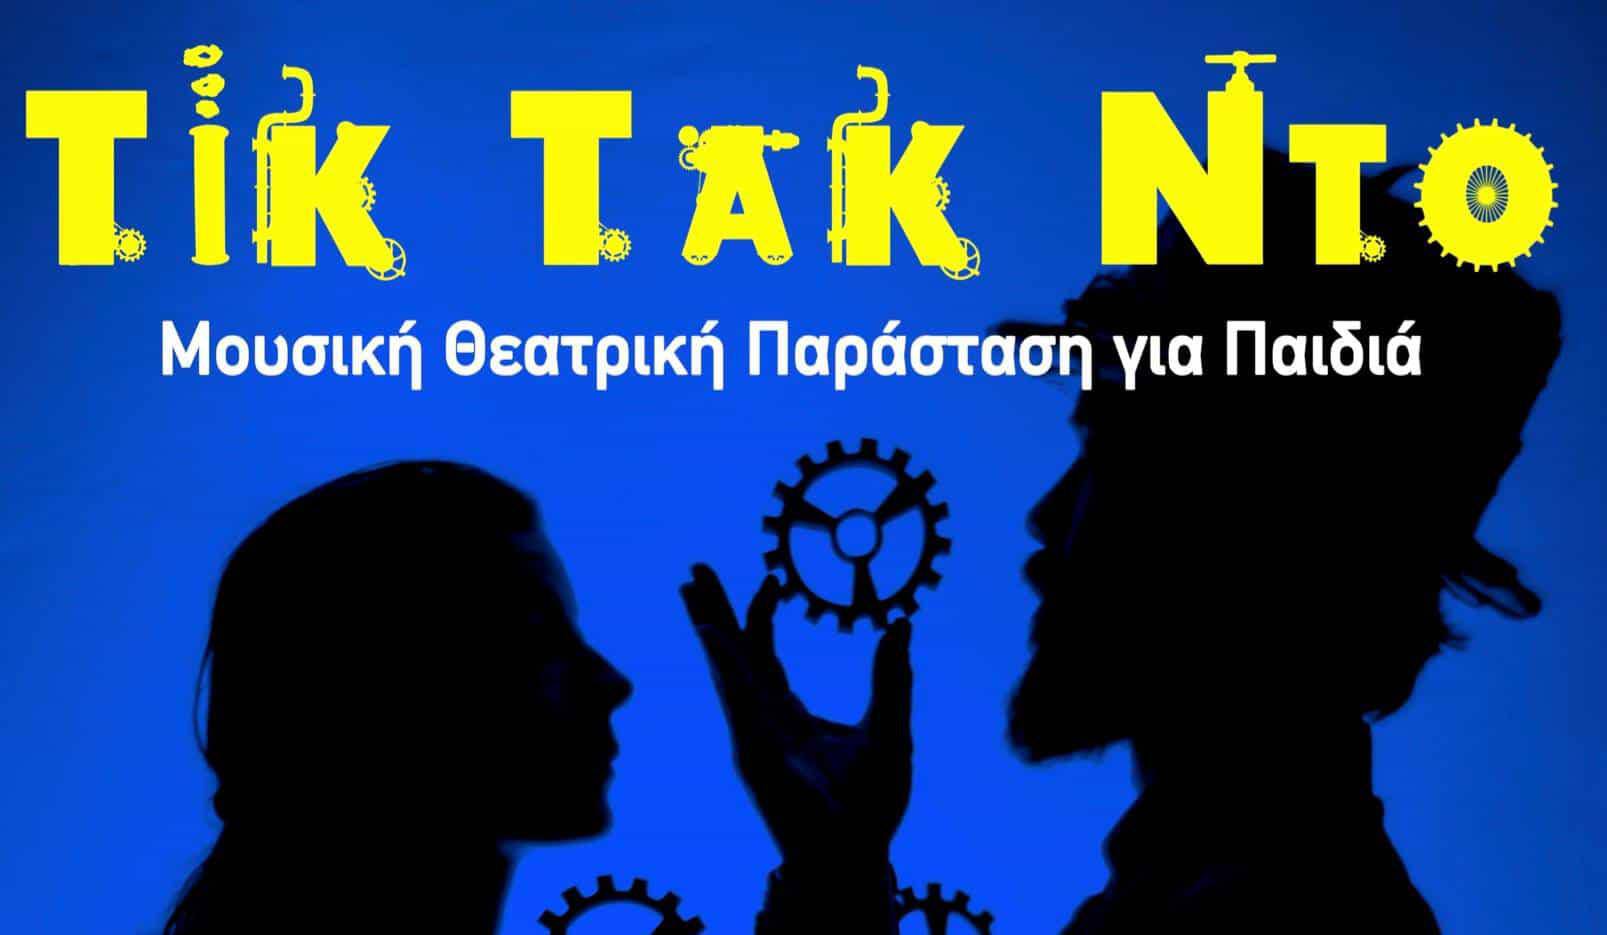 Τικ Τακ Ντο μία μουσικοθεατρική παράσταση για παιδιά Στο Κρεμλίνο